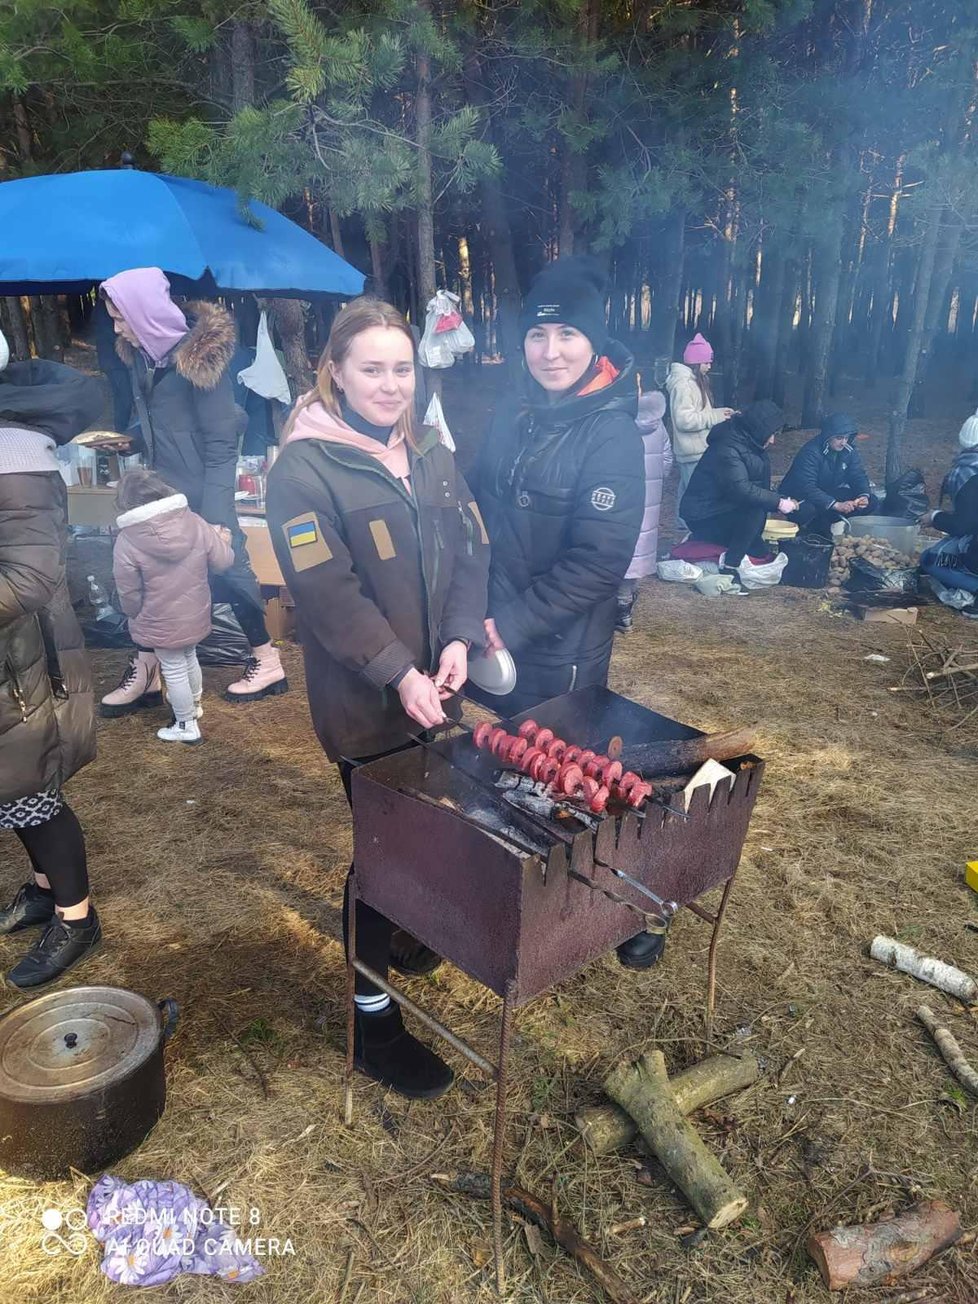 Situace na nejmenší ukrajinsko-polské hranici Hrušiv/Budimierz. Dobrovolníci a místní dodávají potraviny, vaří, navzájem si pomáhají i uprchlíci.